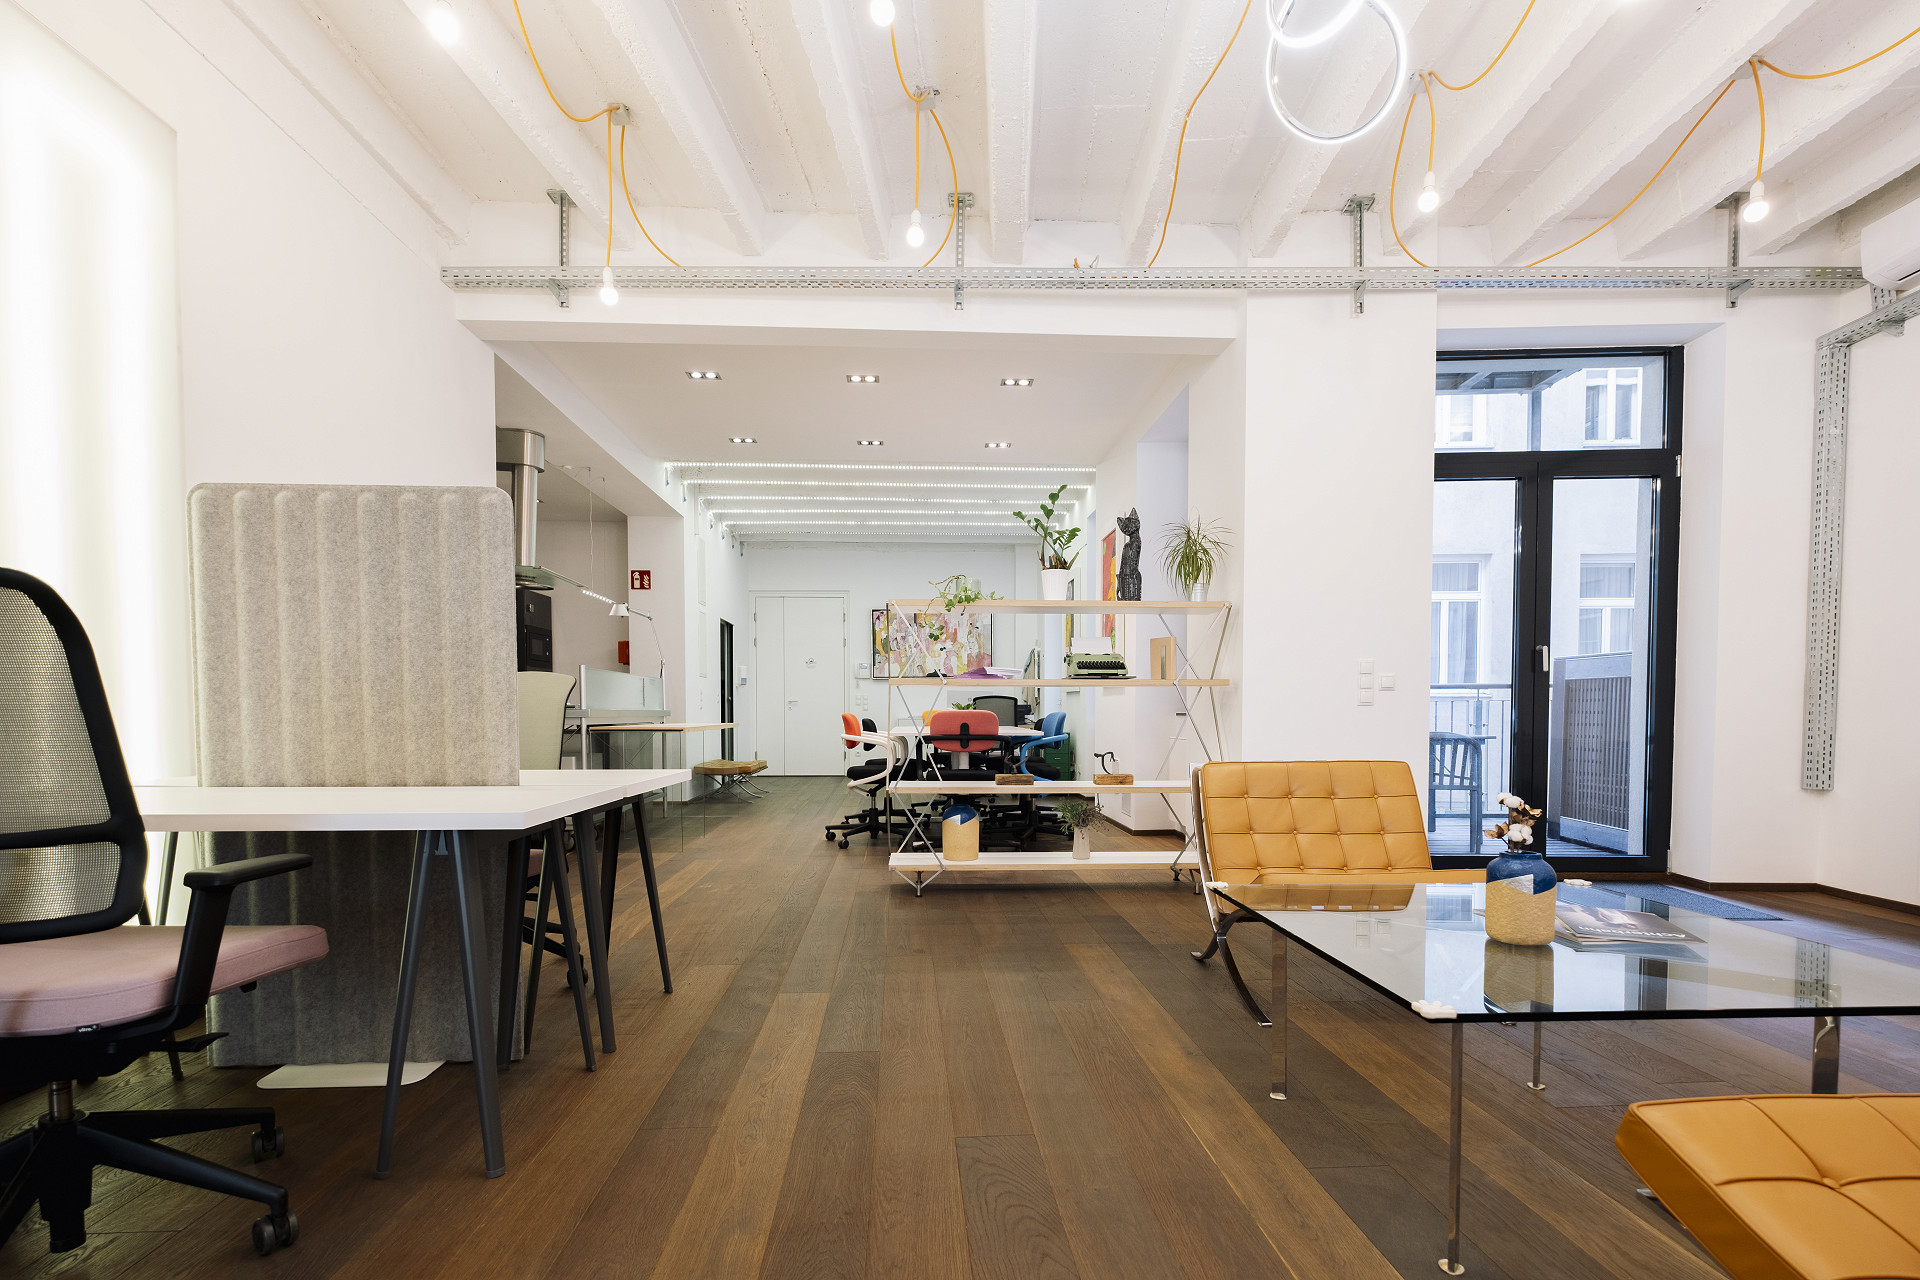 Büros in Wien –  Suchst du nach einem modernen, kleinen aber feinen Designbüro in Wien? Miete deinen eigenen Office Space bei LOFFICE im hippen 7. Wiener Bezirk!